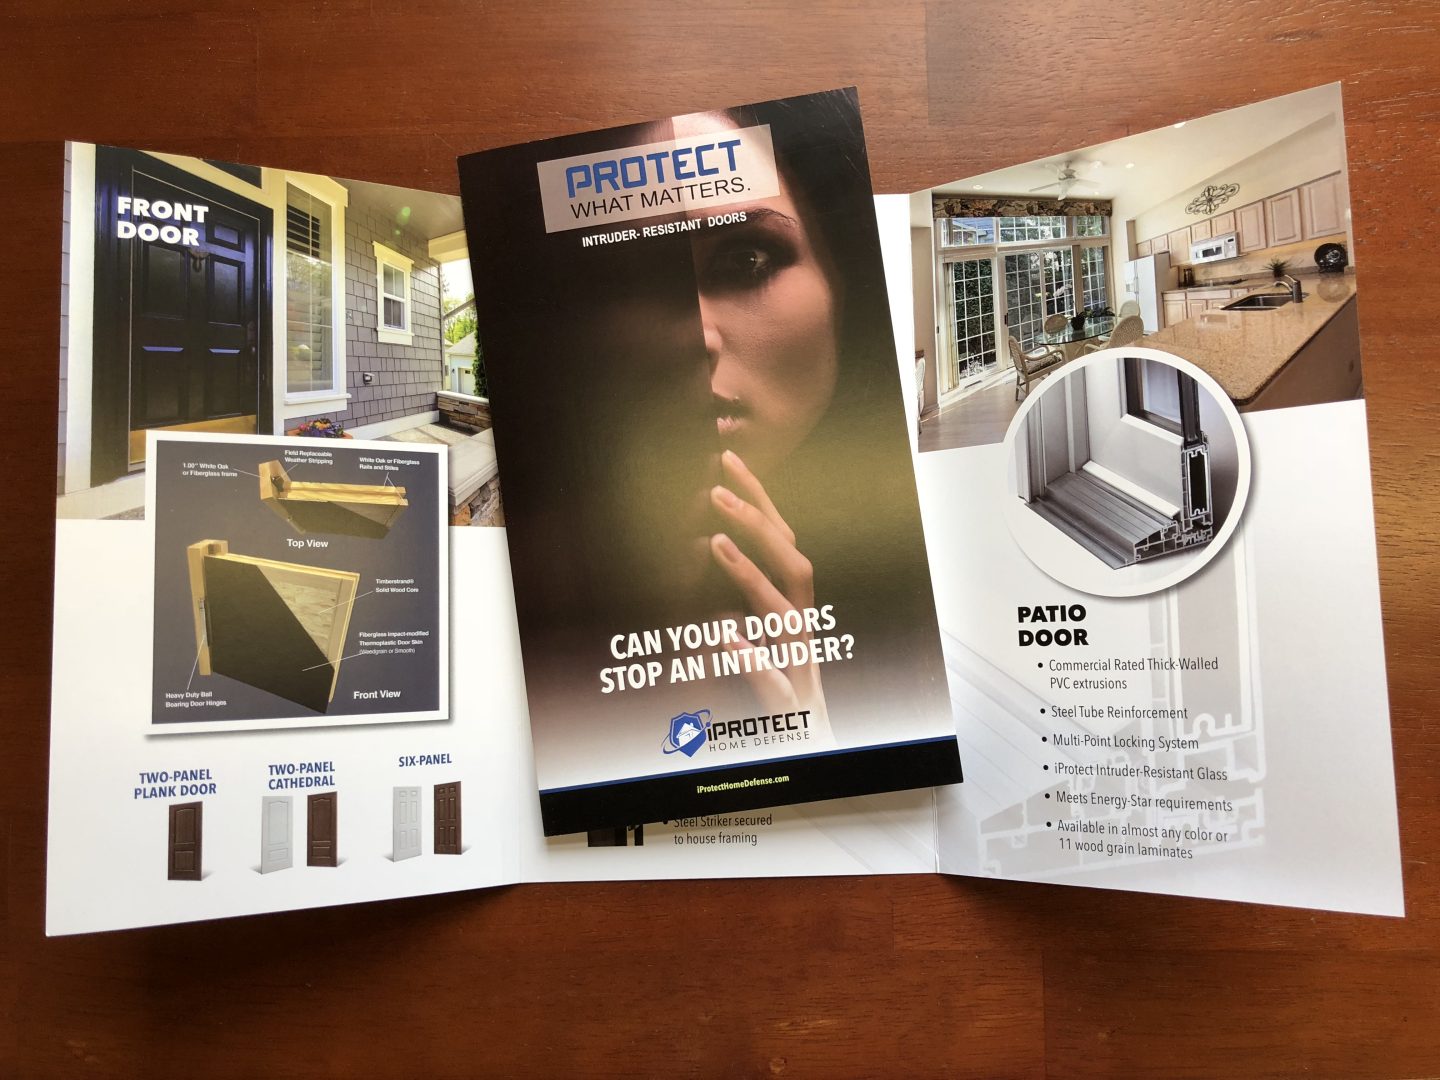 Spectrum Releases New iProtect Door Brochure